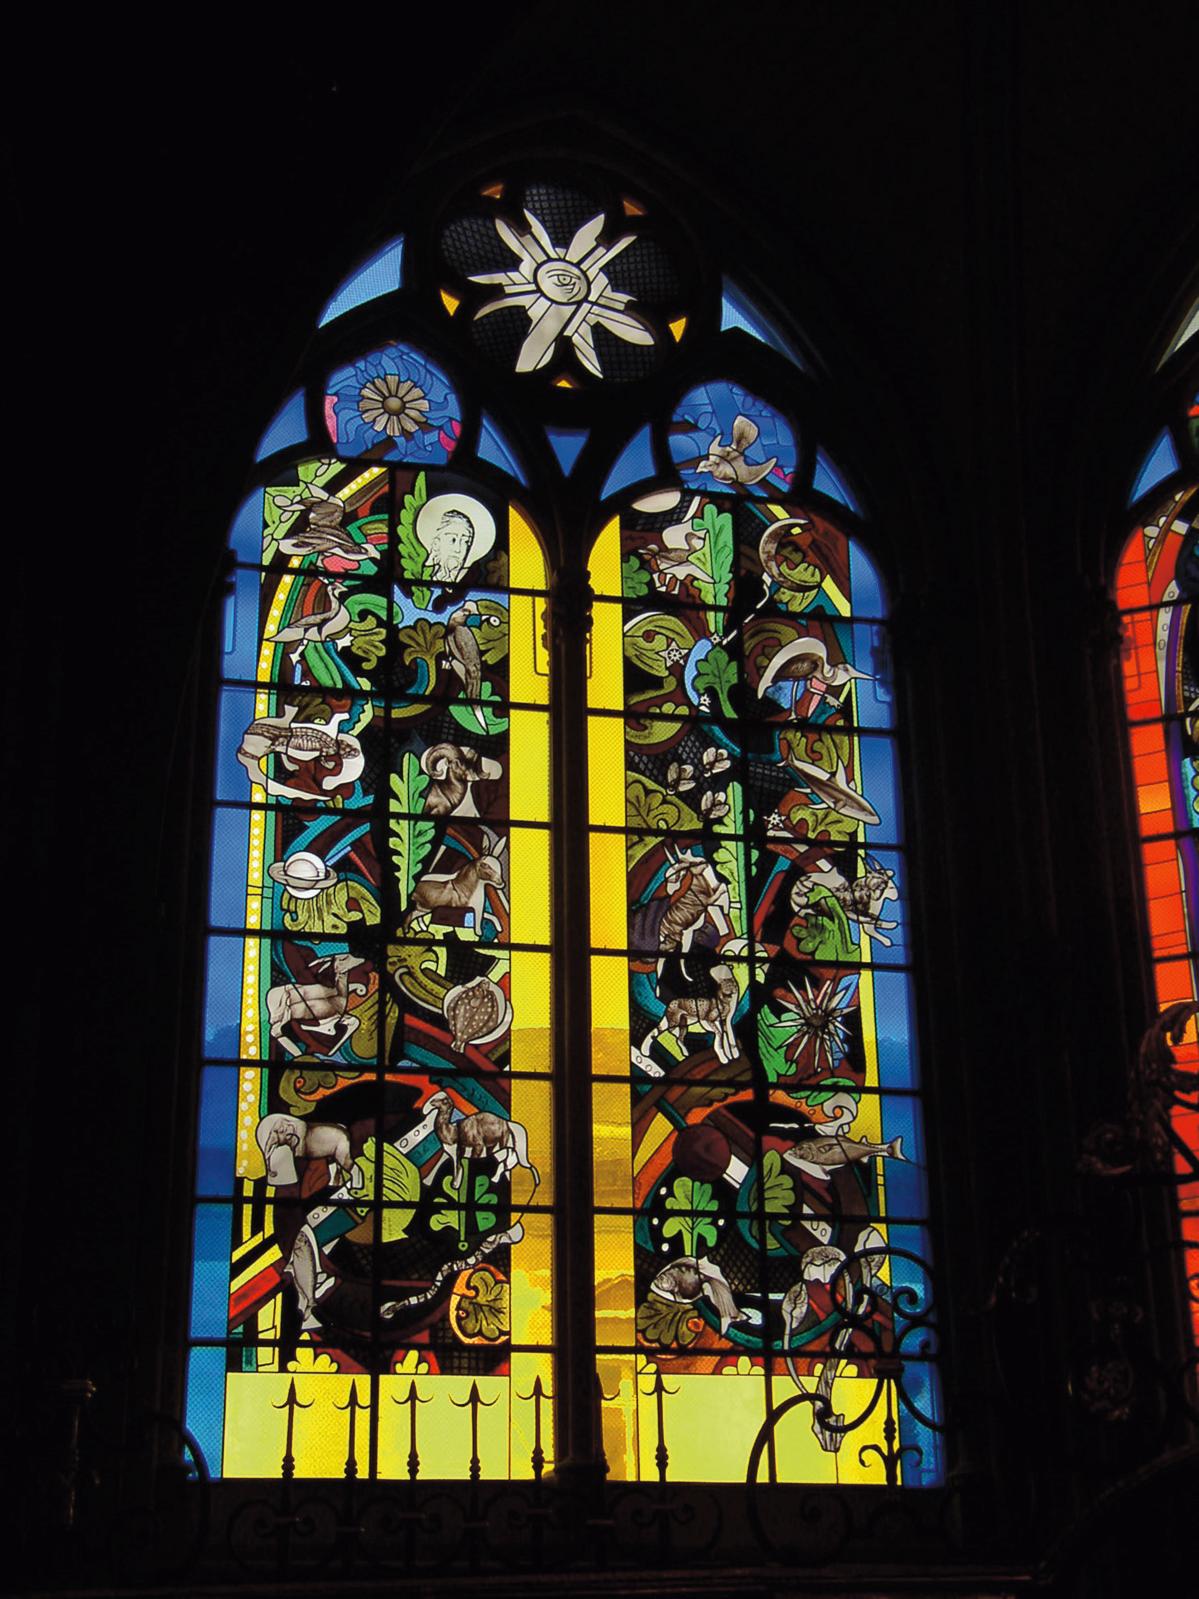 Ateliers Duchemin, vitraux créés par Jean-Michel Alberola pour la cathédrale de Nevers. © Ateliers Duchemin